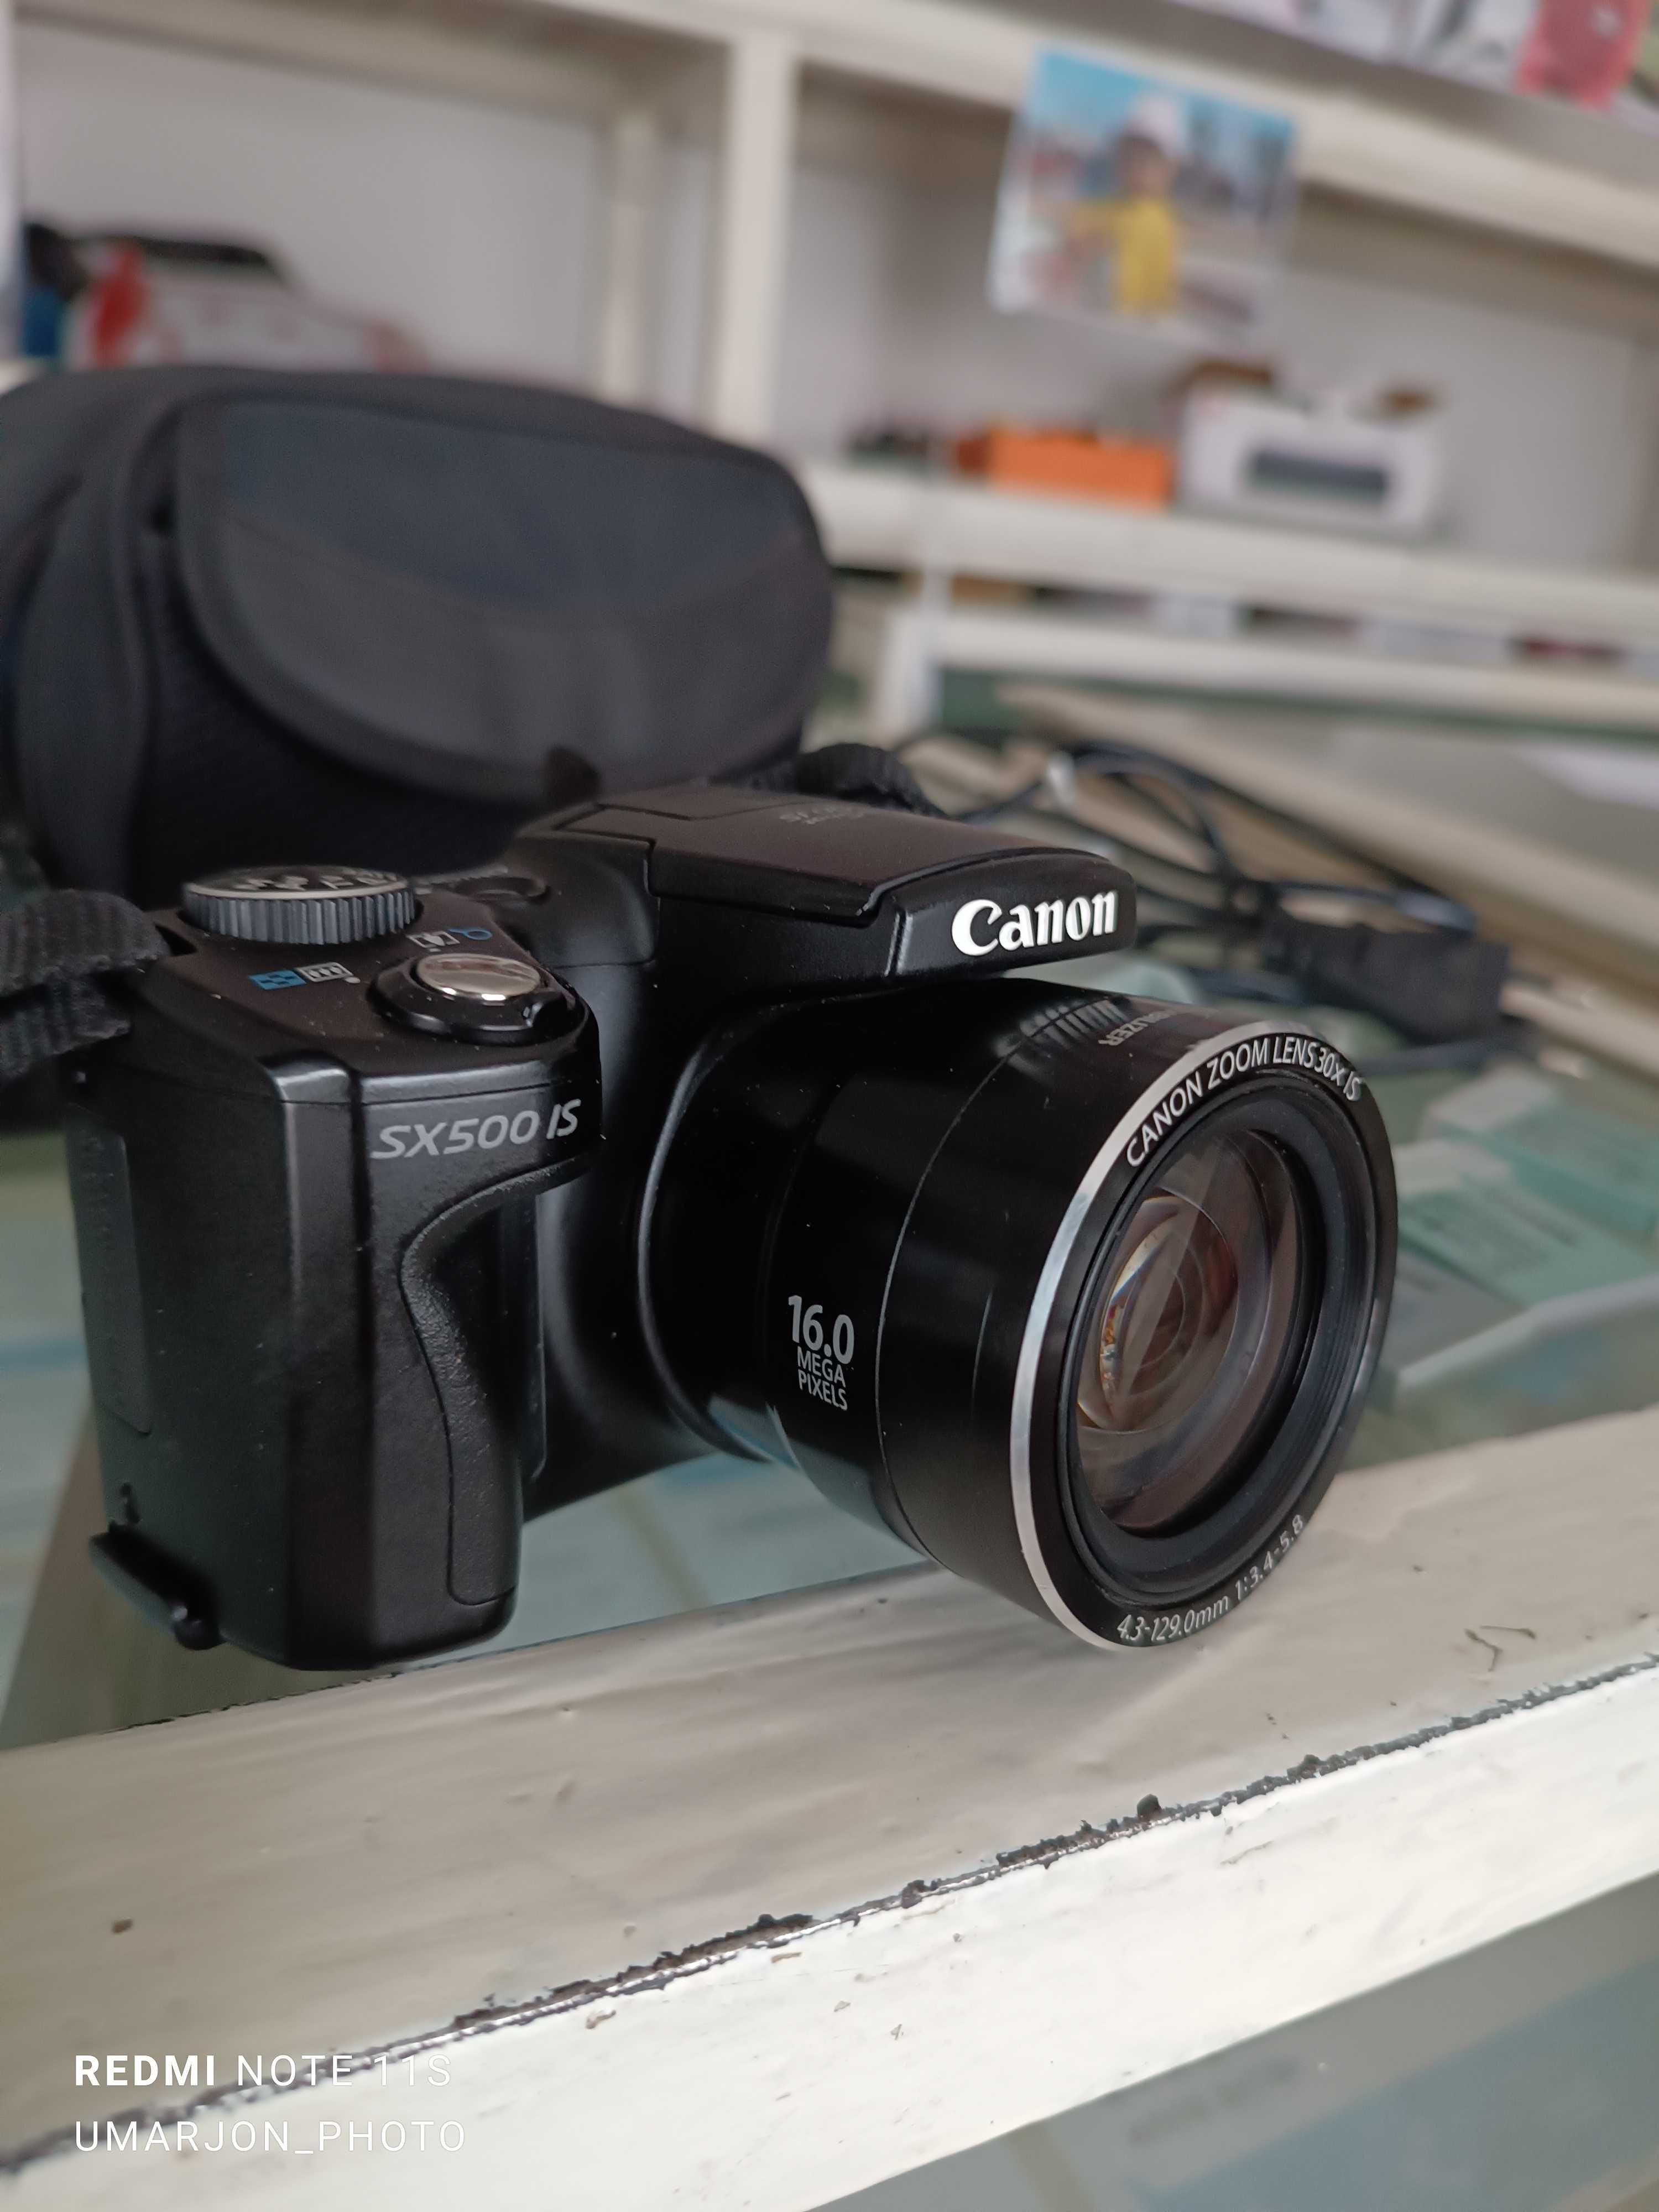 Canon sx500is fotoaparat rasm uchun zor xolatda